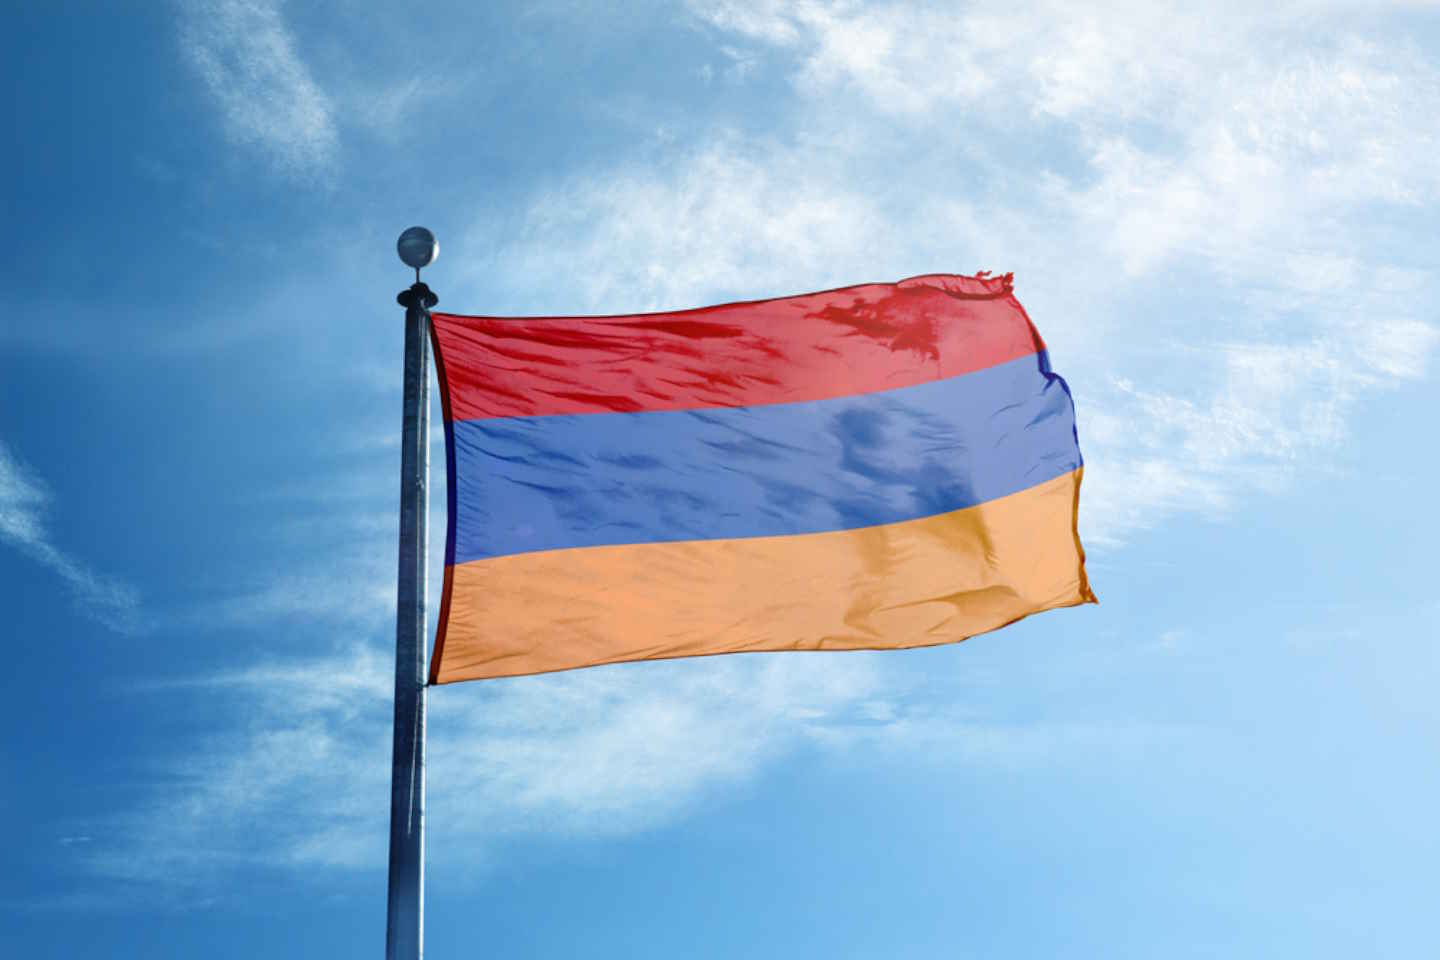 Новости мира / Политика в мире / В Армении задержан лидер оппозиции